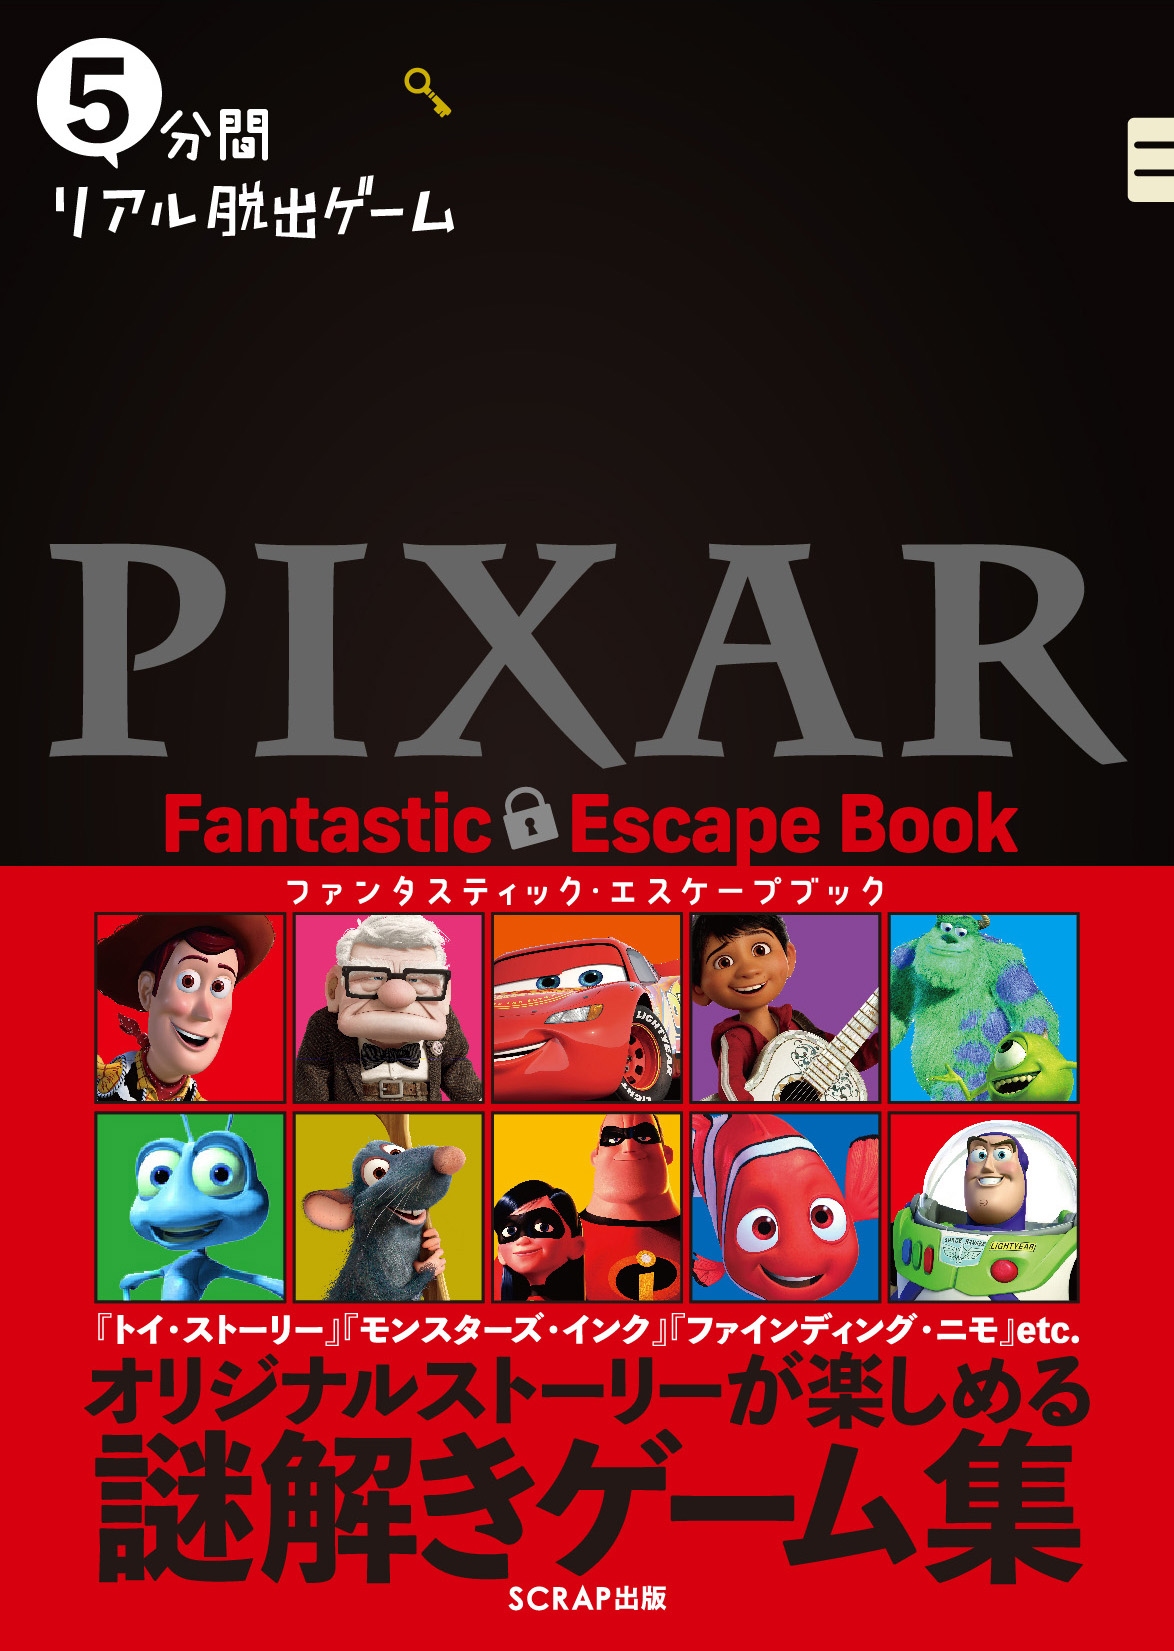 トイ ストーリー や モンスターズ インク 等pixar作品のオリジナル謎解きストーリーが楽しめる 5分間リアル脱出ゲーム Pixar Fantastic Escape Book 2 25 木 発売 株式会社scrapのプレスリリース